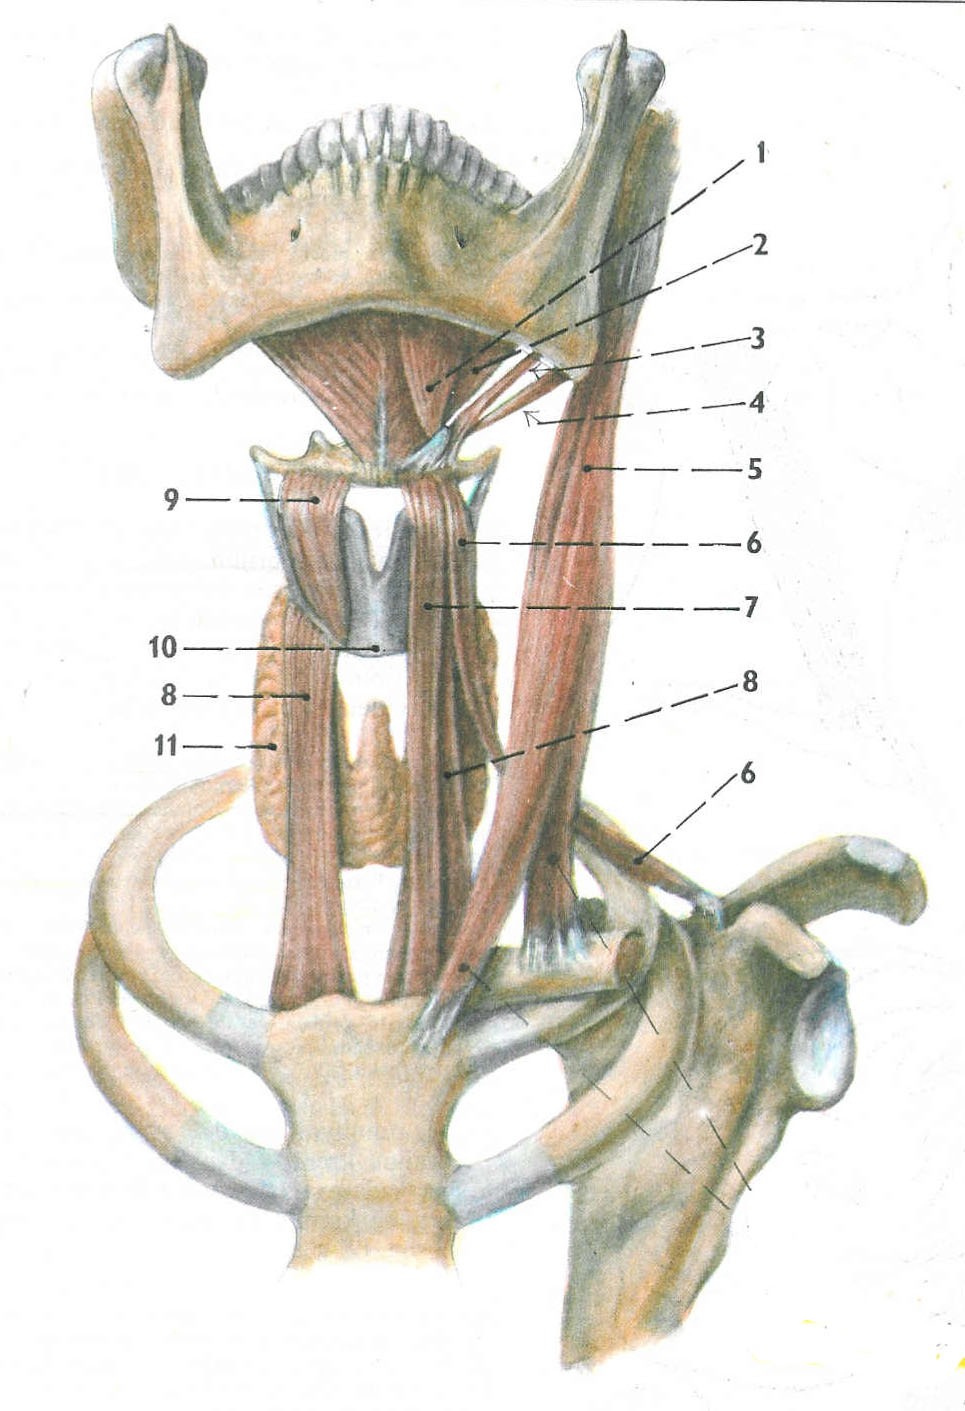 Poruchy motorické funkce n. facialis způsobují obrnu mimických a dalších uvedených svalů. Tyto svaly se významně podílejí na motorice artikulačních orgánů.